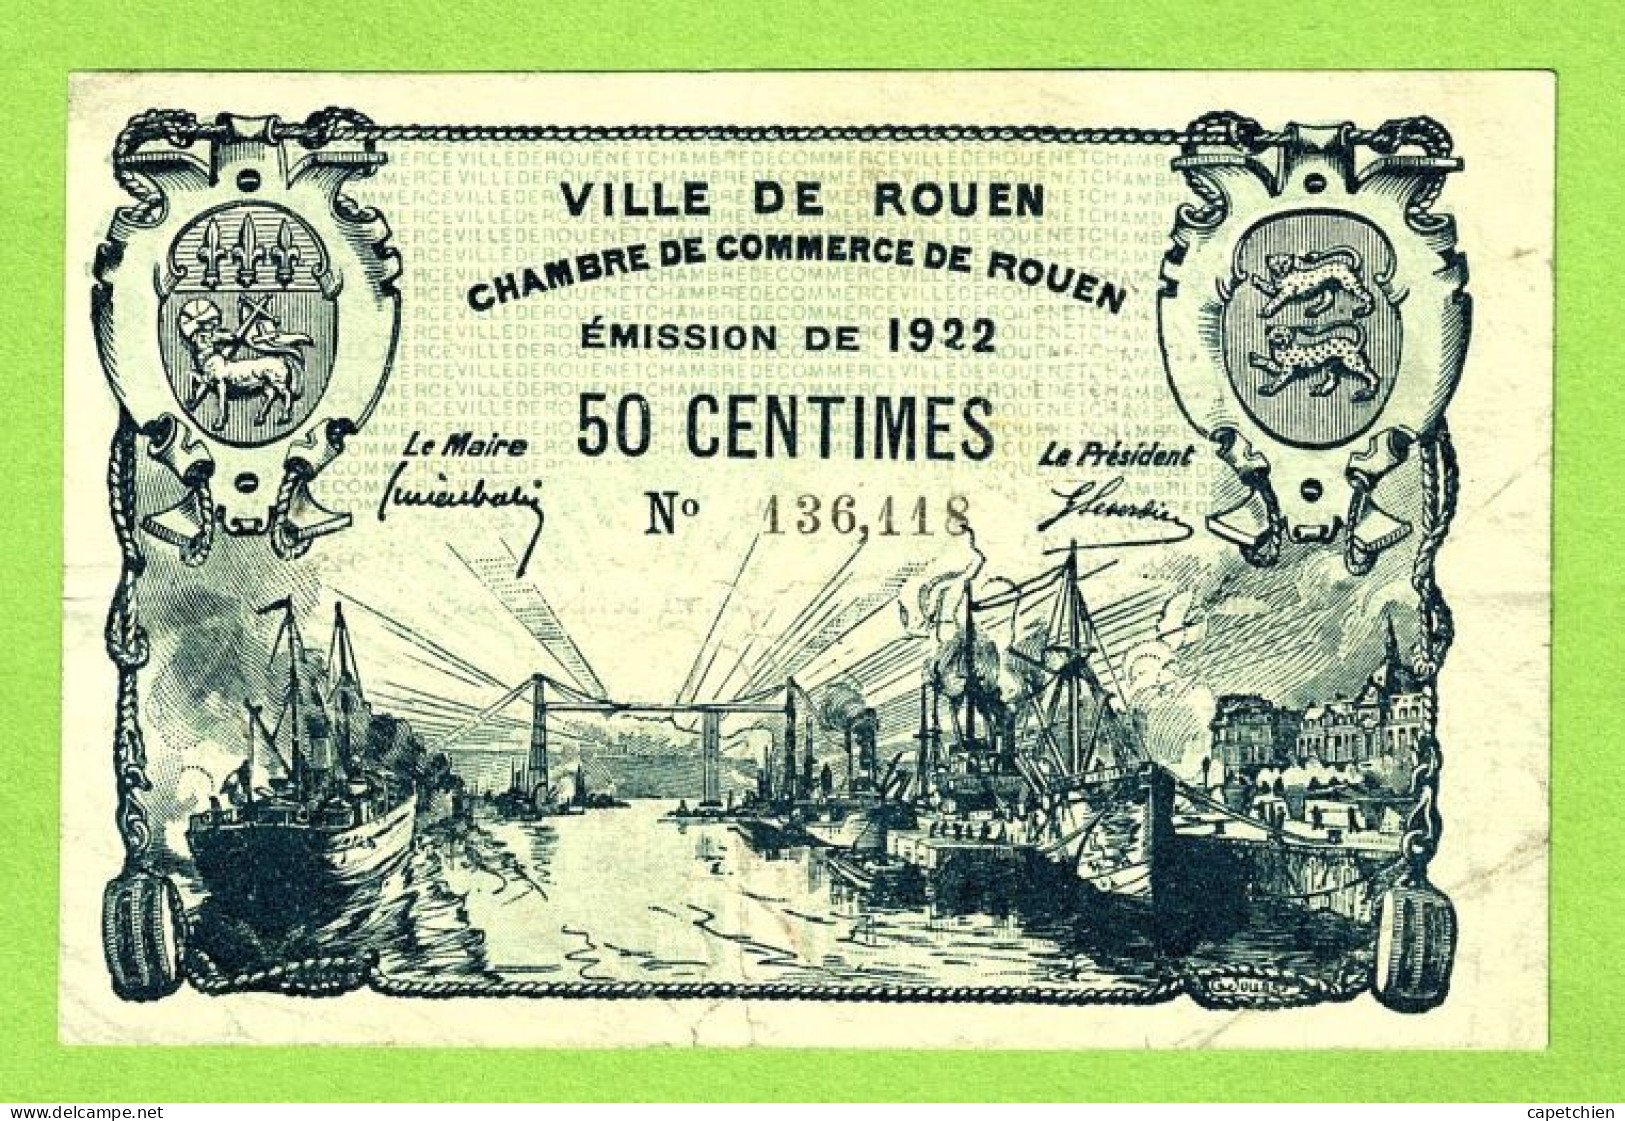 FRANCE / VILLE & CHAMBRE De COMMERCE De ROUEN / 50 CENTIMES  / EMISSION DE 1922 /  / N° 136611 - Handelskammer